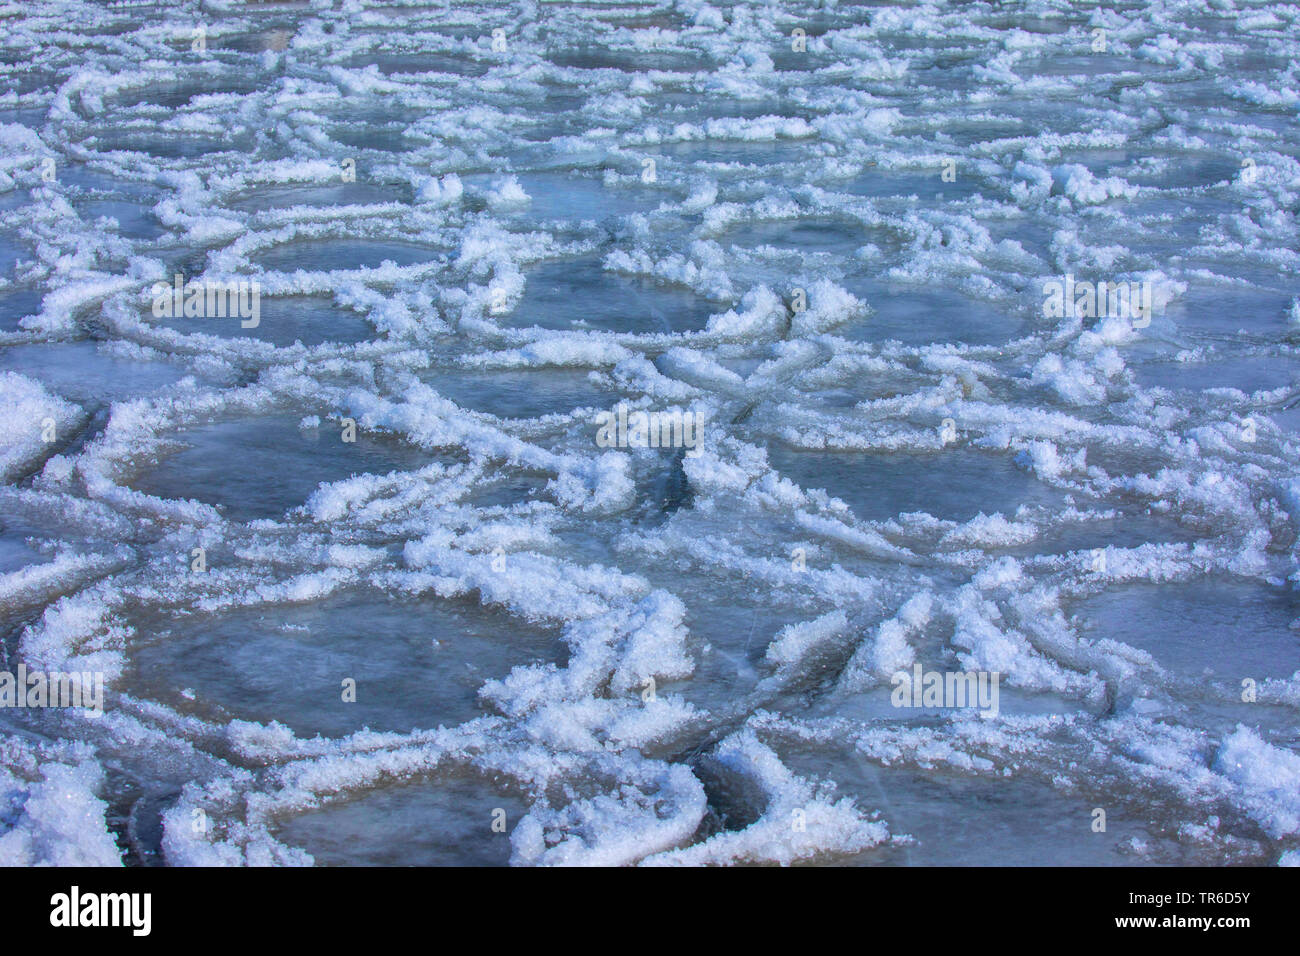 Formas extrañas témpanos de hielo en una bahía, después de una tormenta de invierno, Alemania, Baviera, el lago Chiemsee Foto de stock